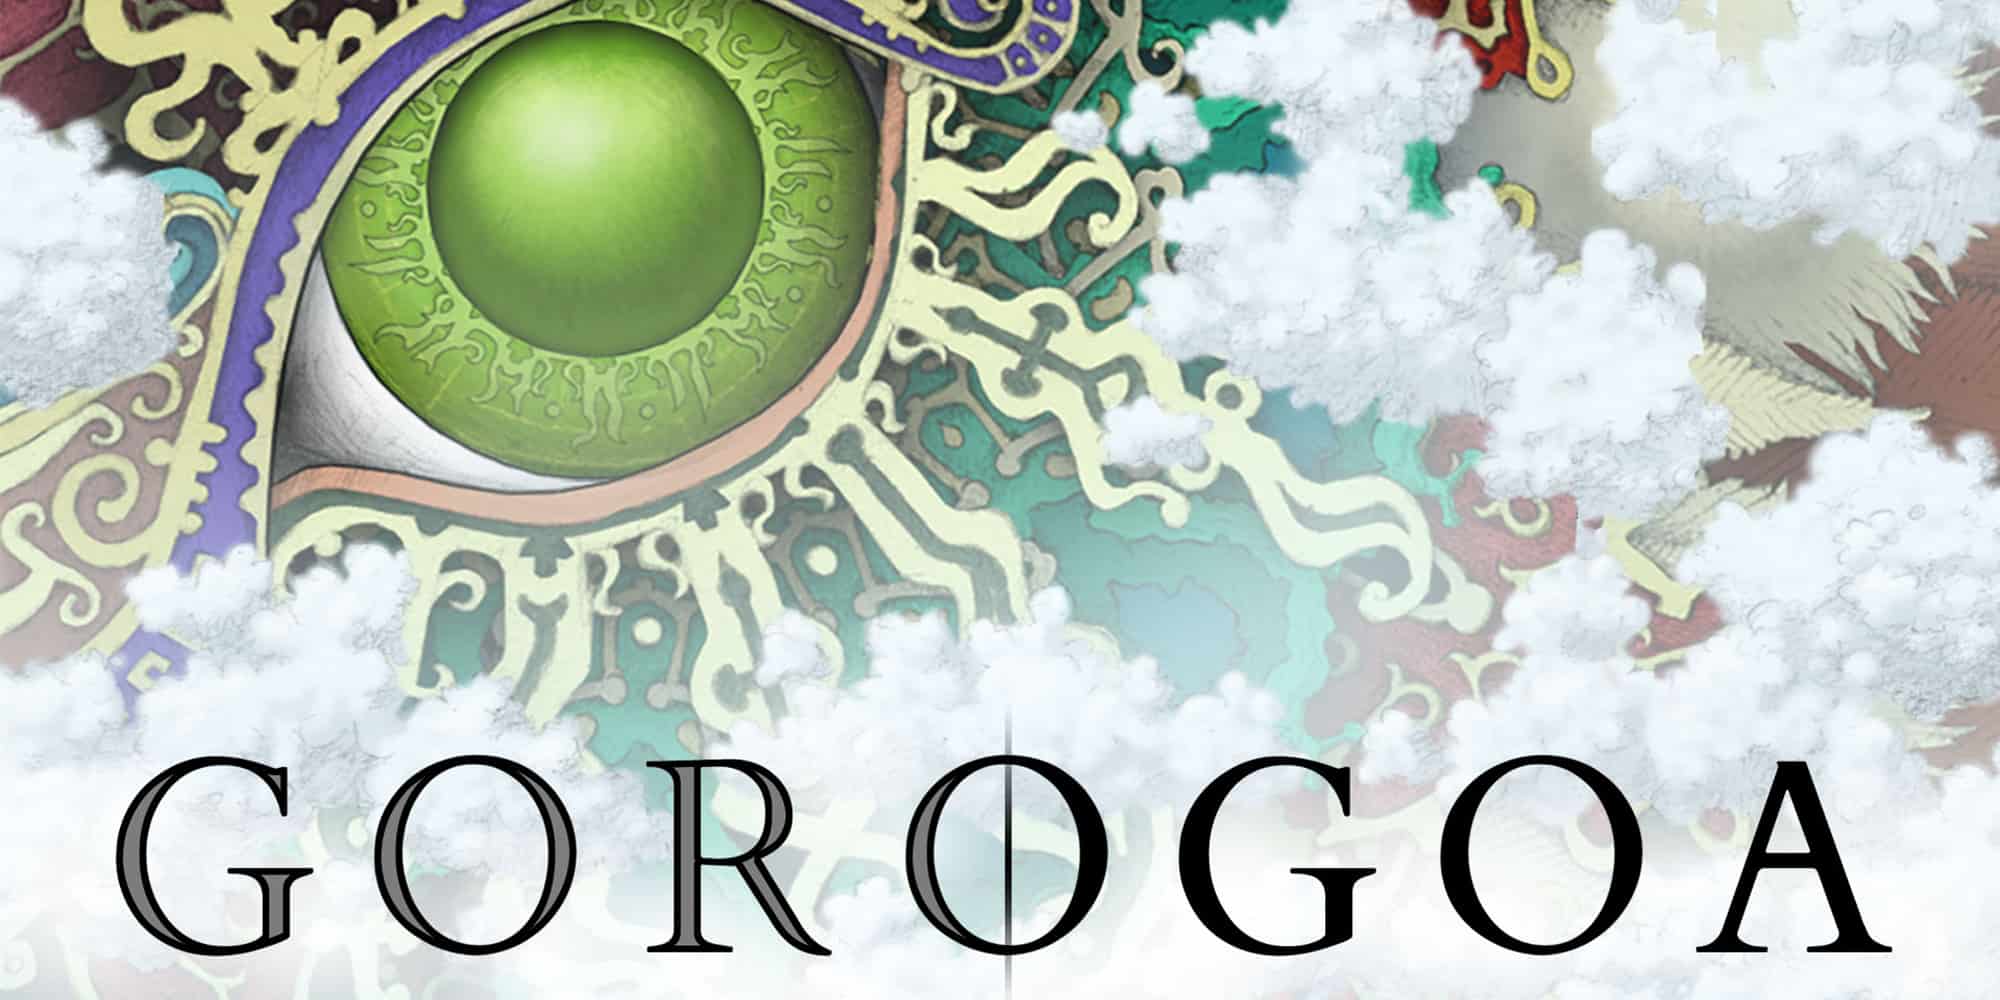 A Nintendo promotional image for Gorogoa.